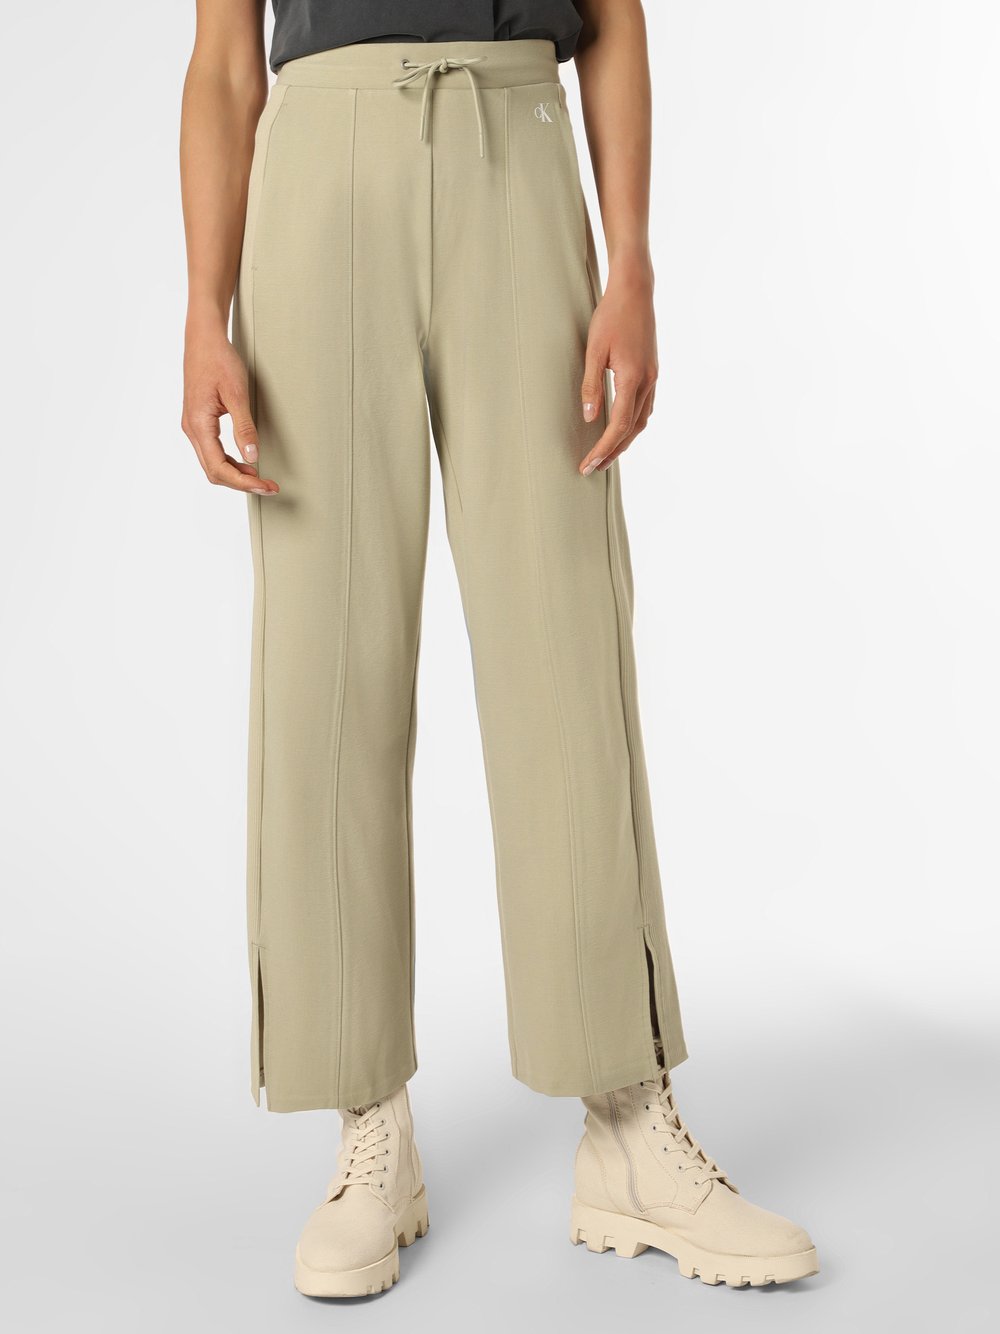 Calvin Klein Jeans - Damskie spodnie dresowe, zielony|beżowy